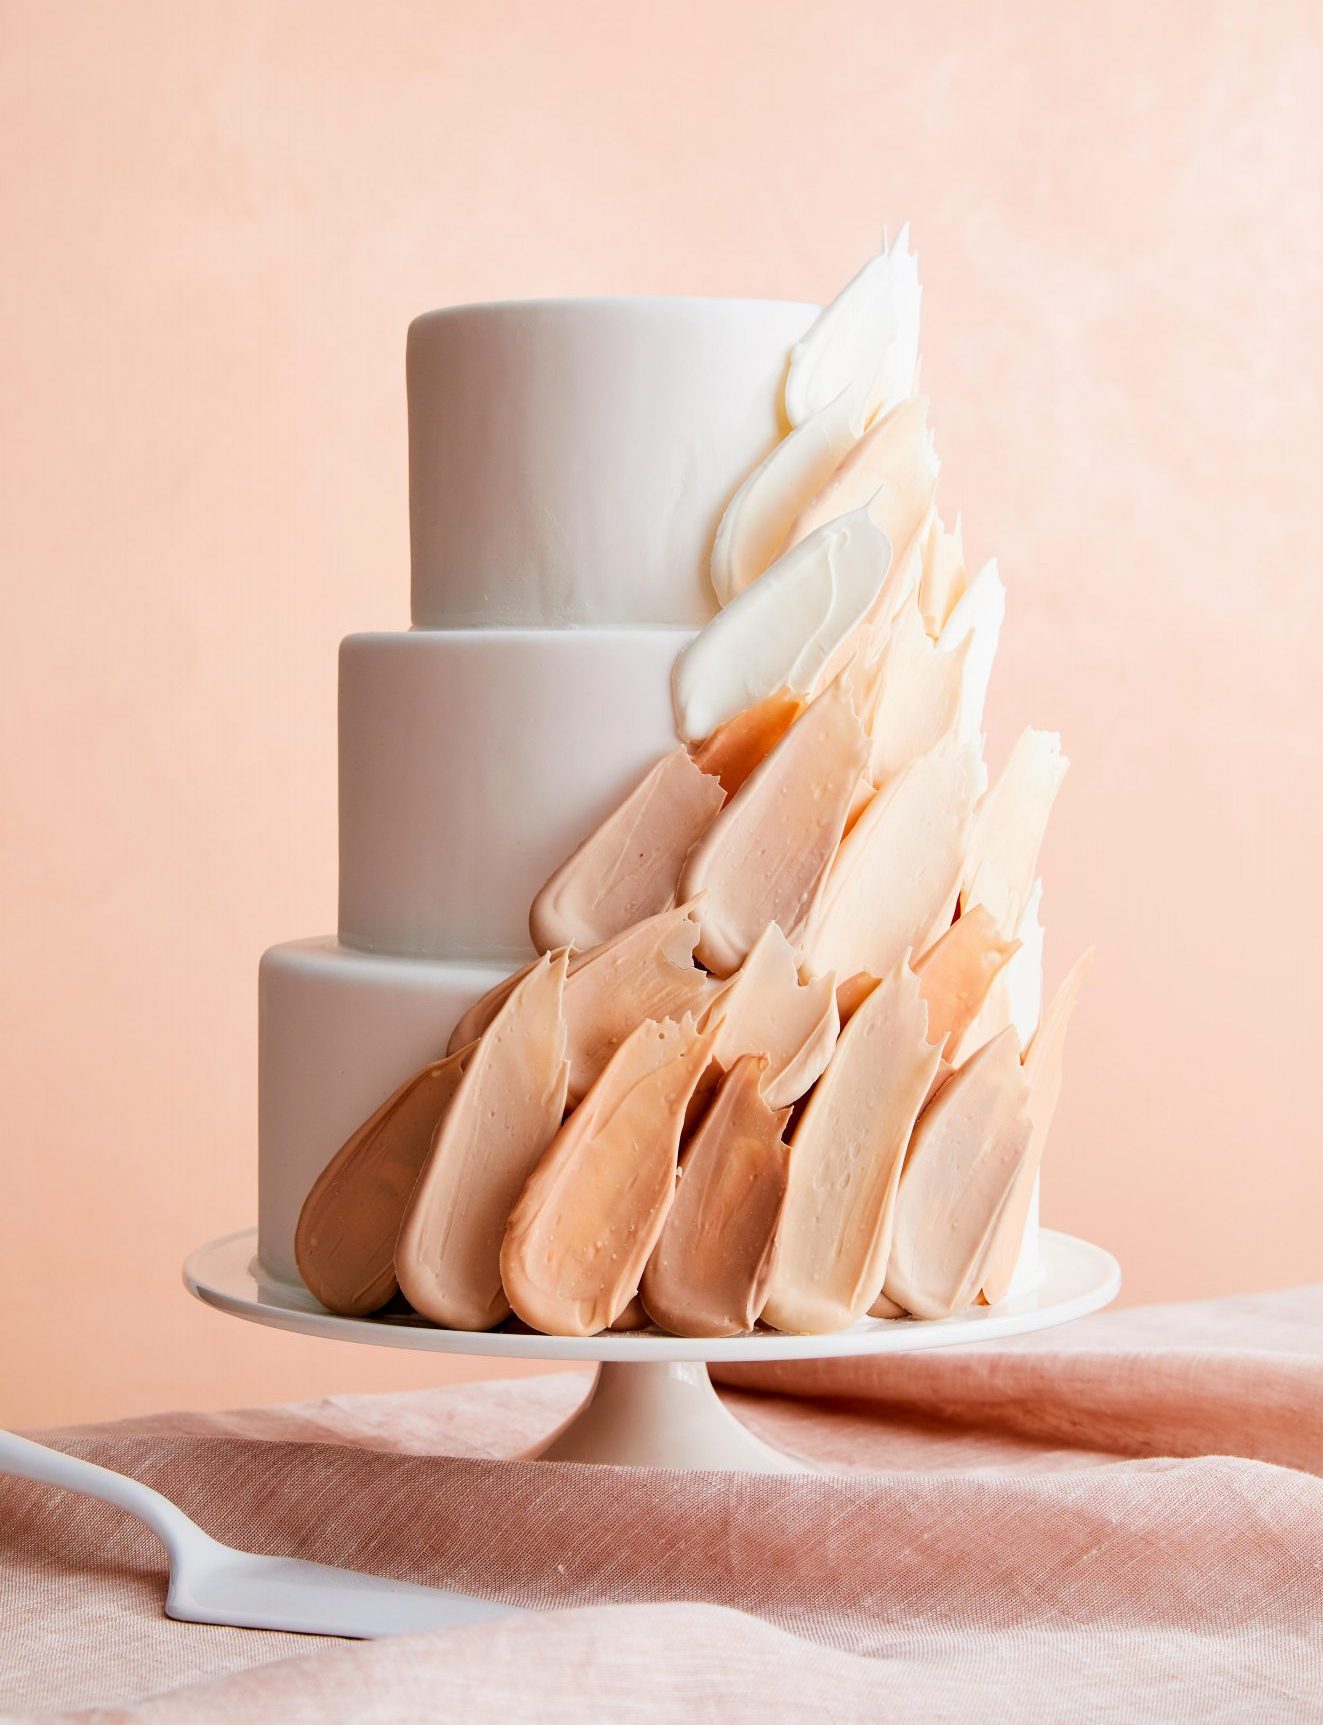 Свадебные торты с изысканными украшениями, которые легко воспроизвести